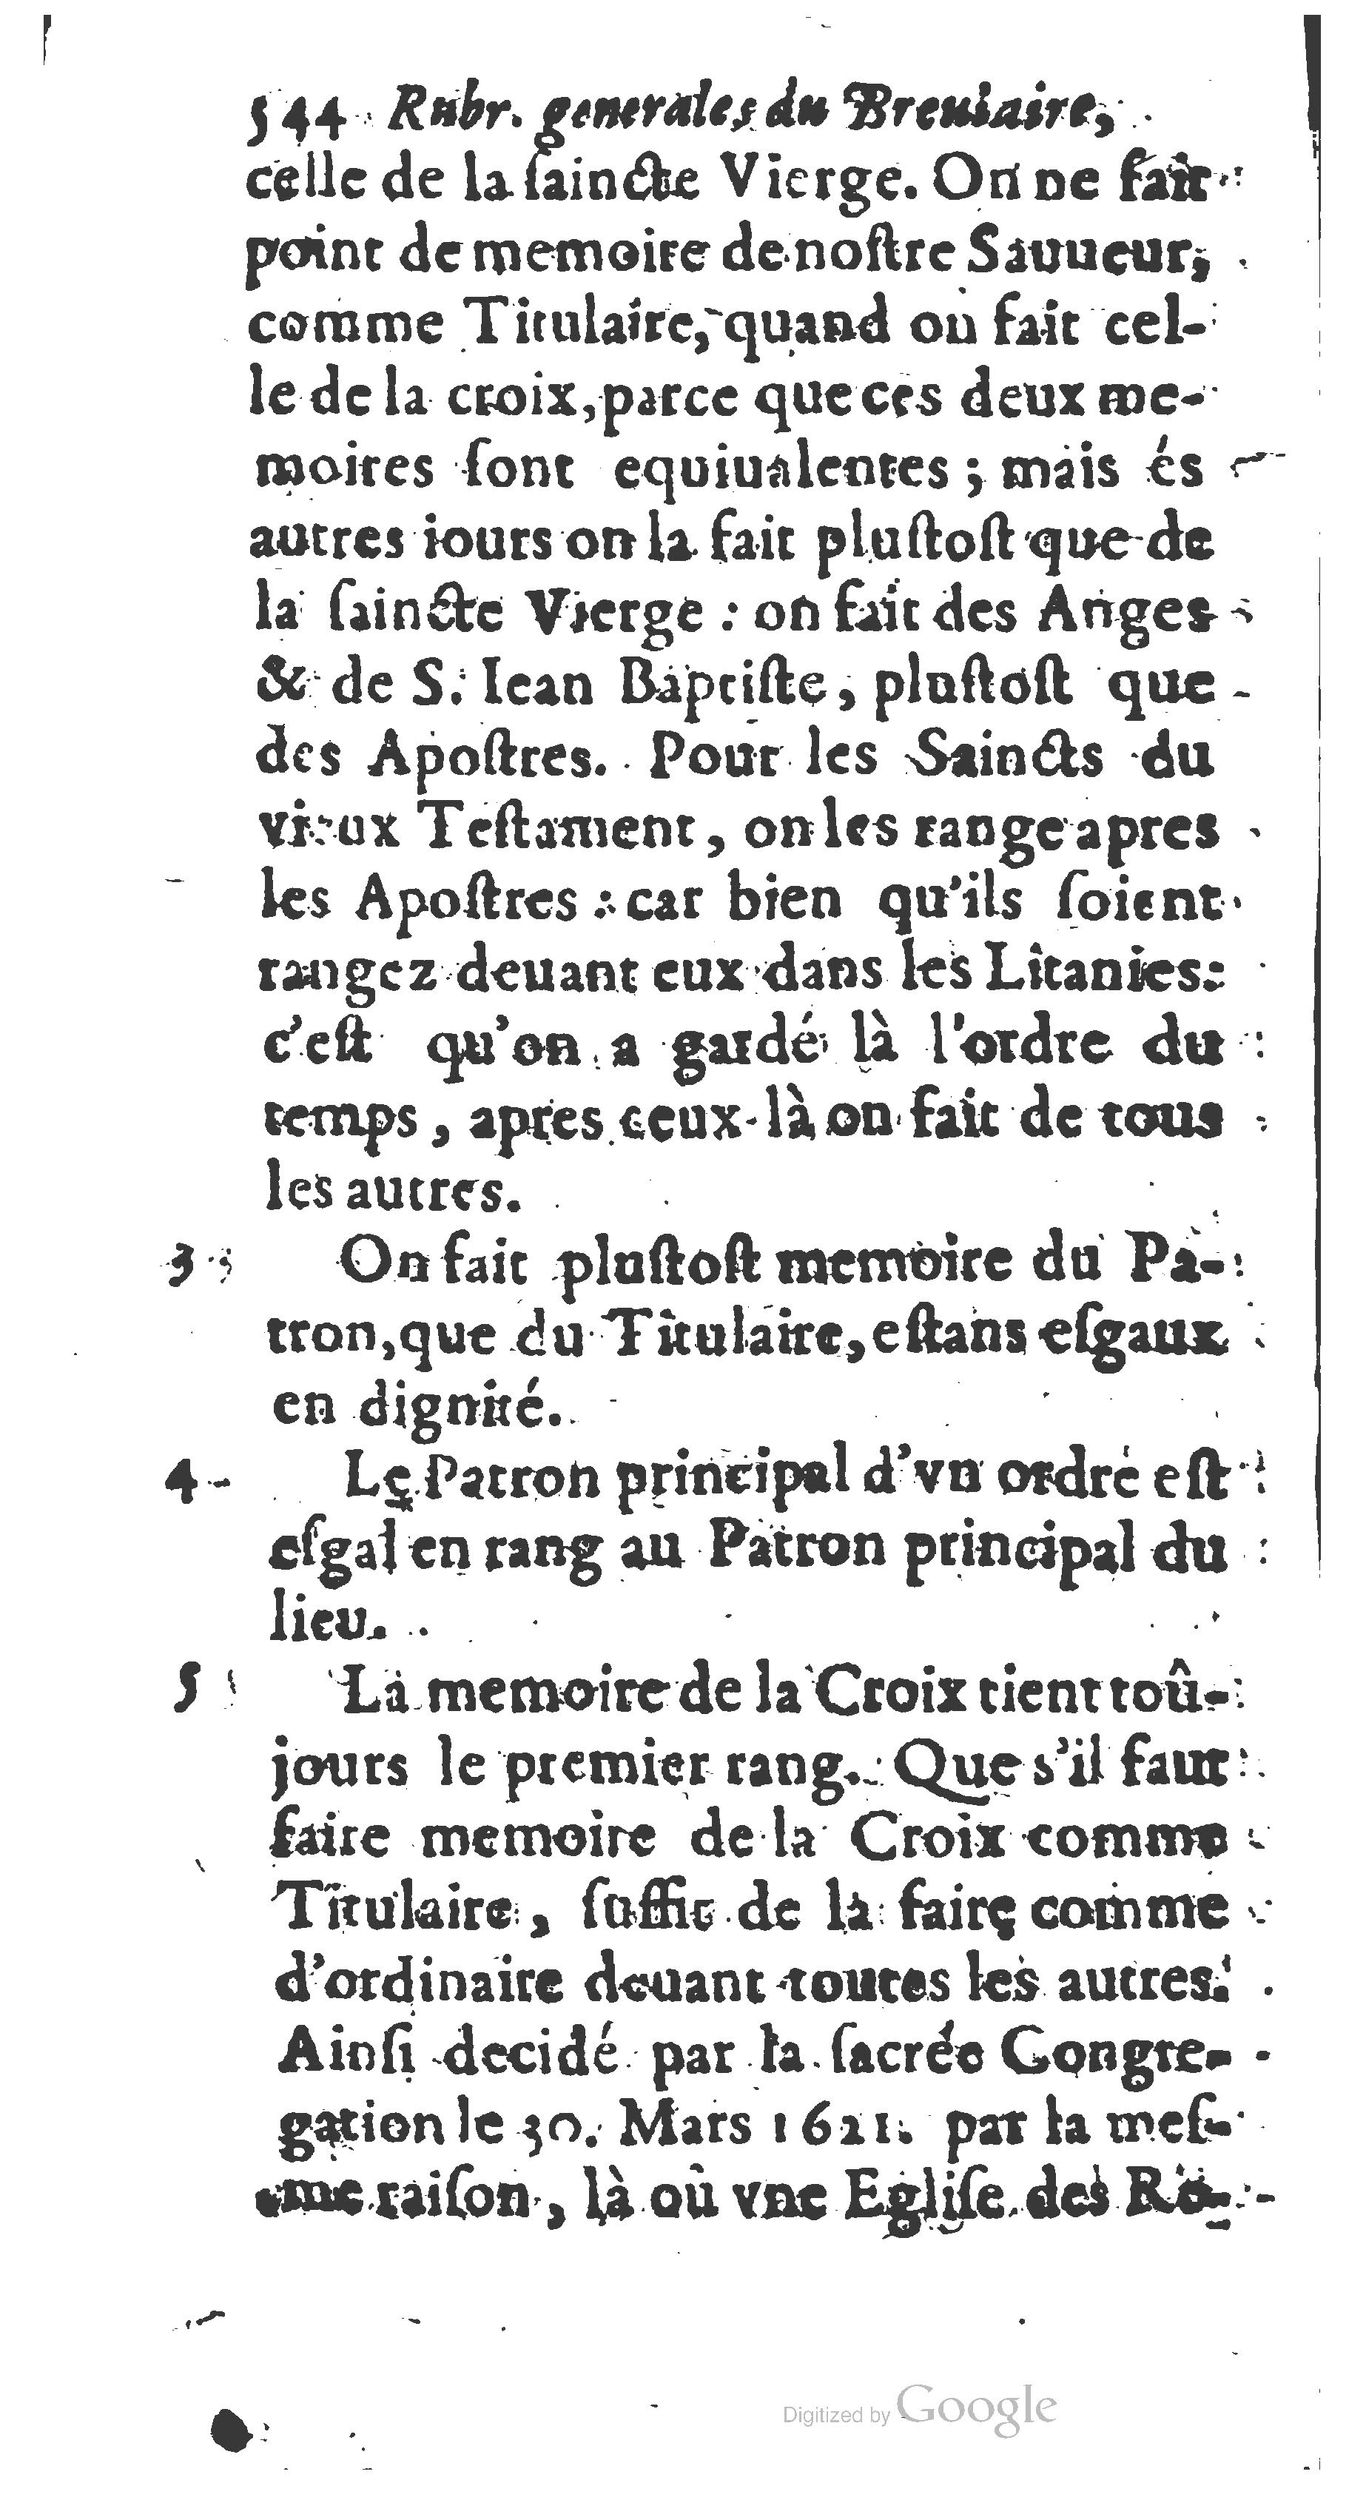 1651 Abrégé du trésor des cérémonies ecclésiastiques Guillermet_BM Lyon_Page_563.jpg